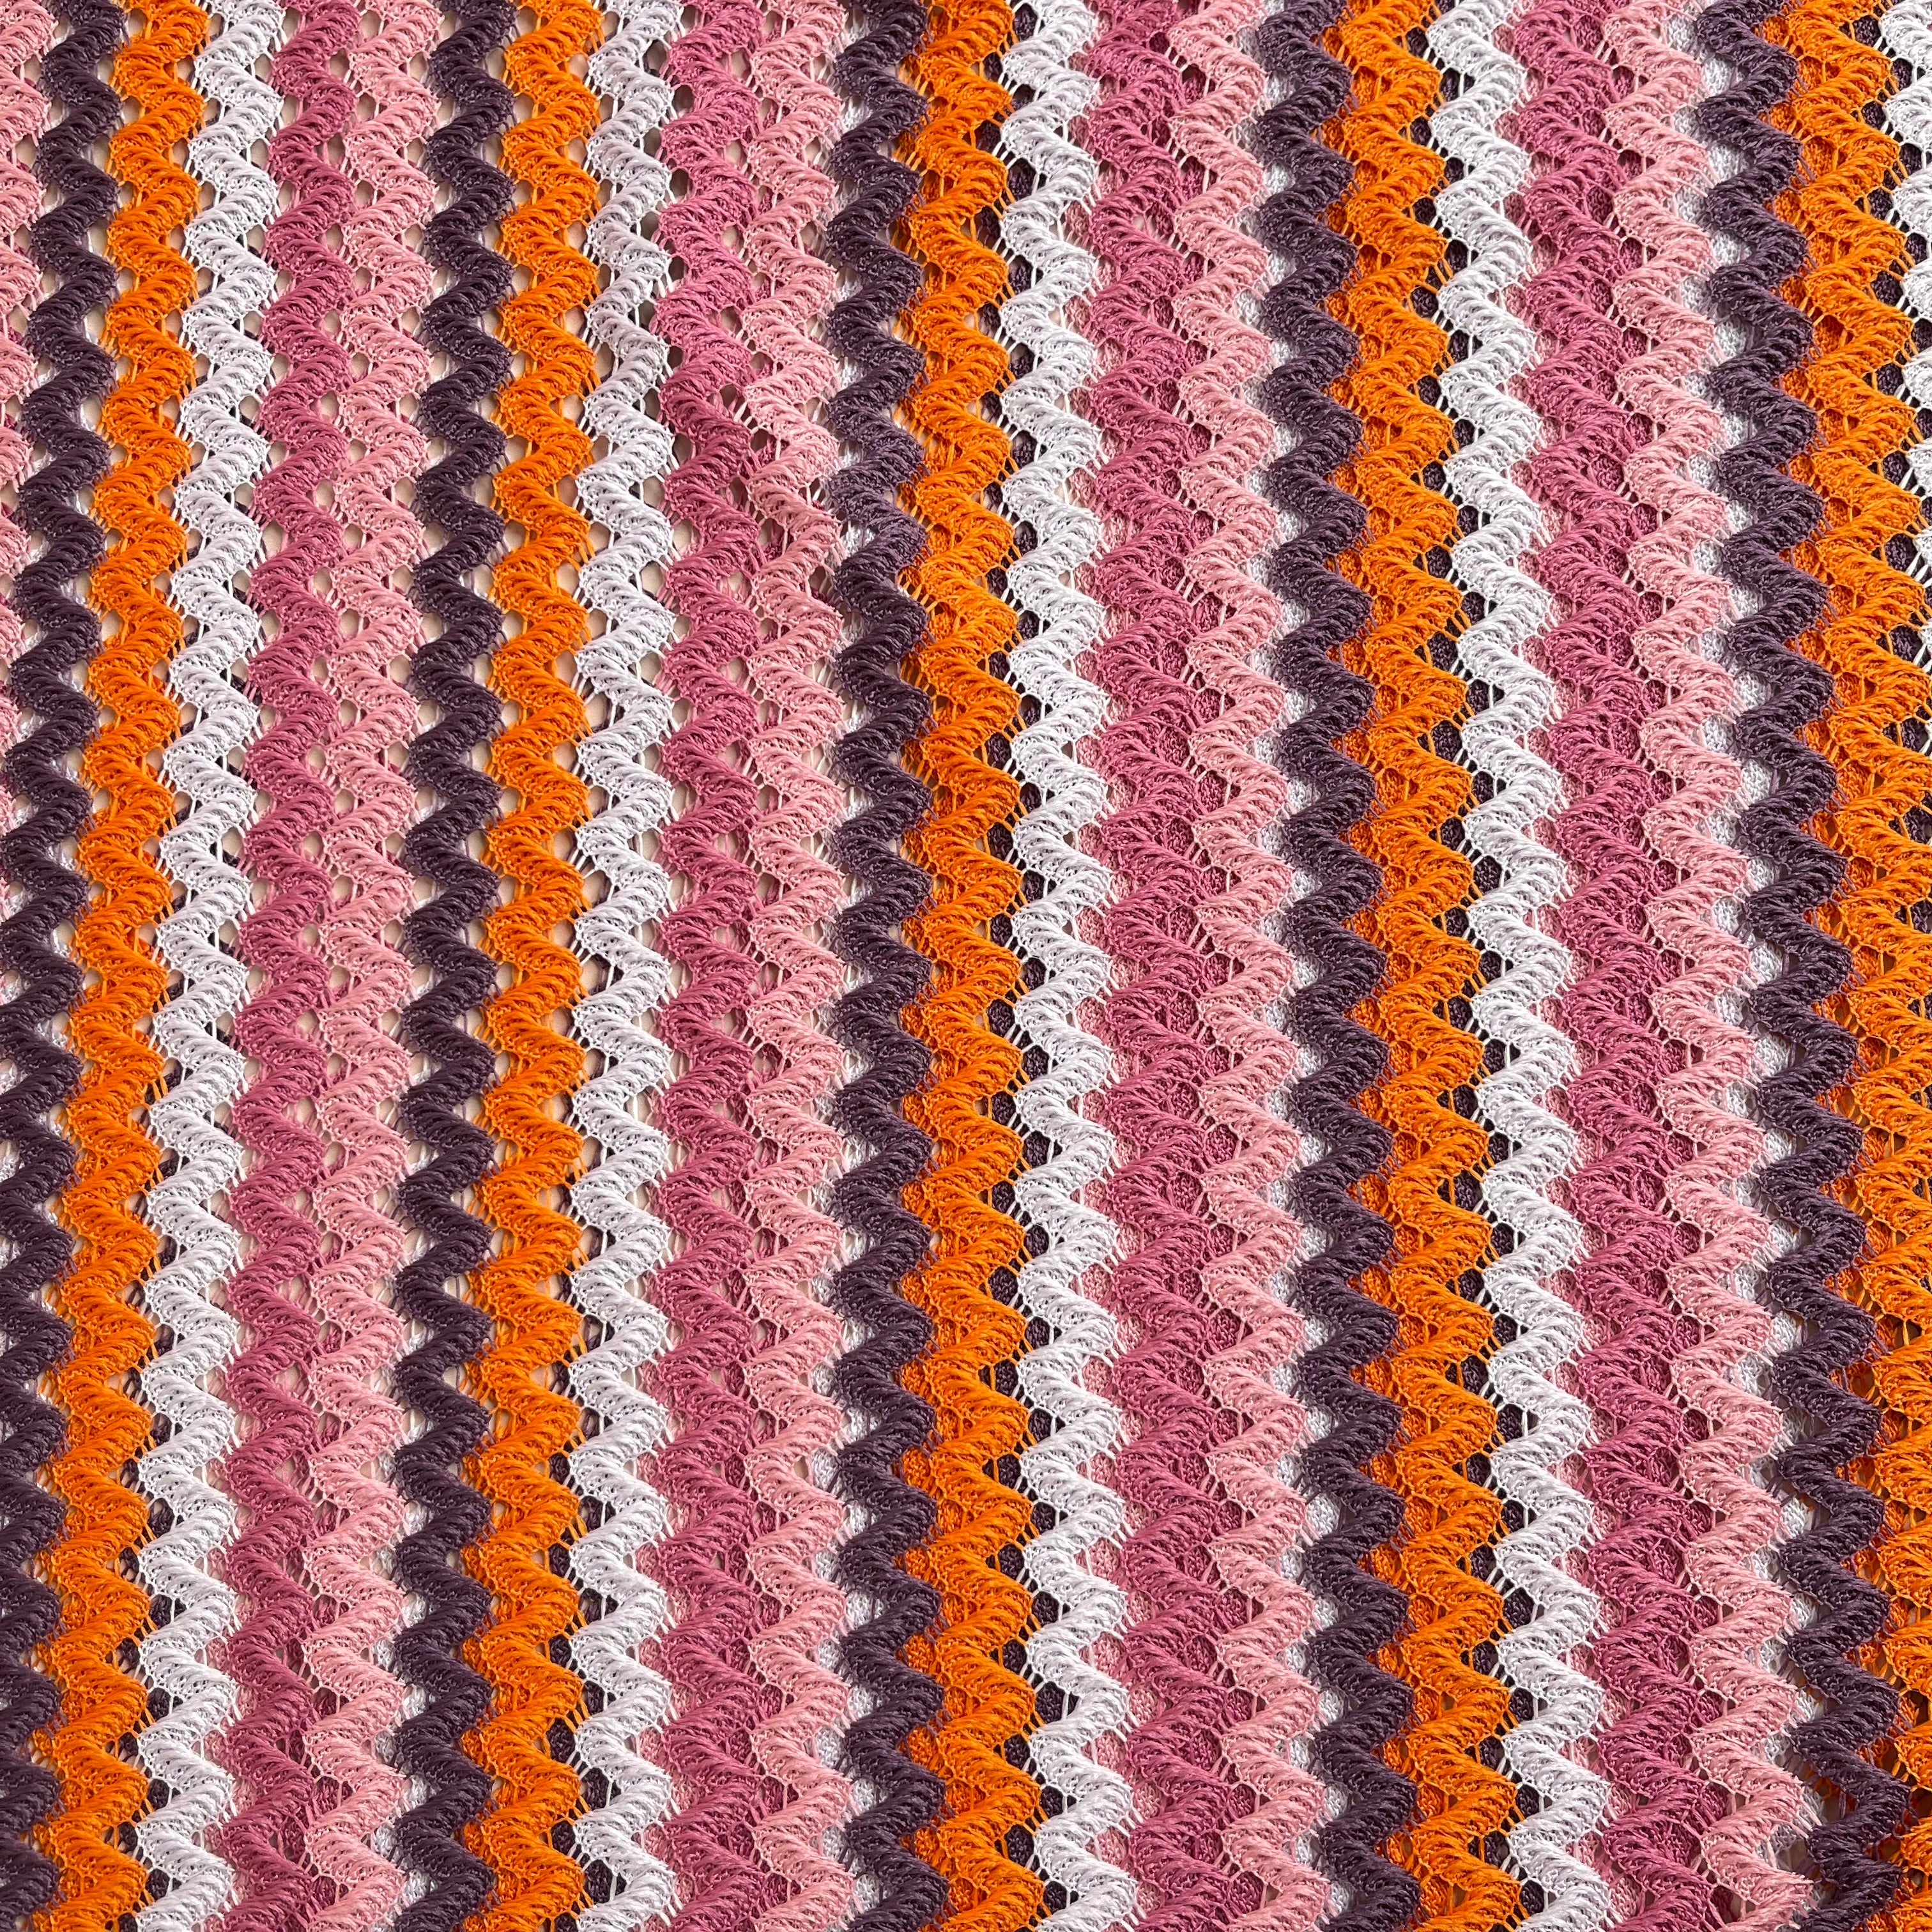 Sunset Lace Knit Fabric